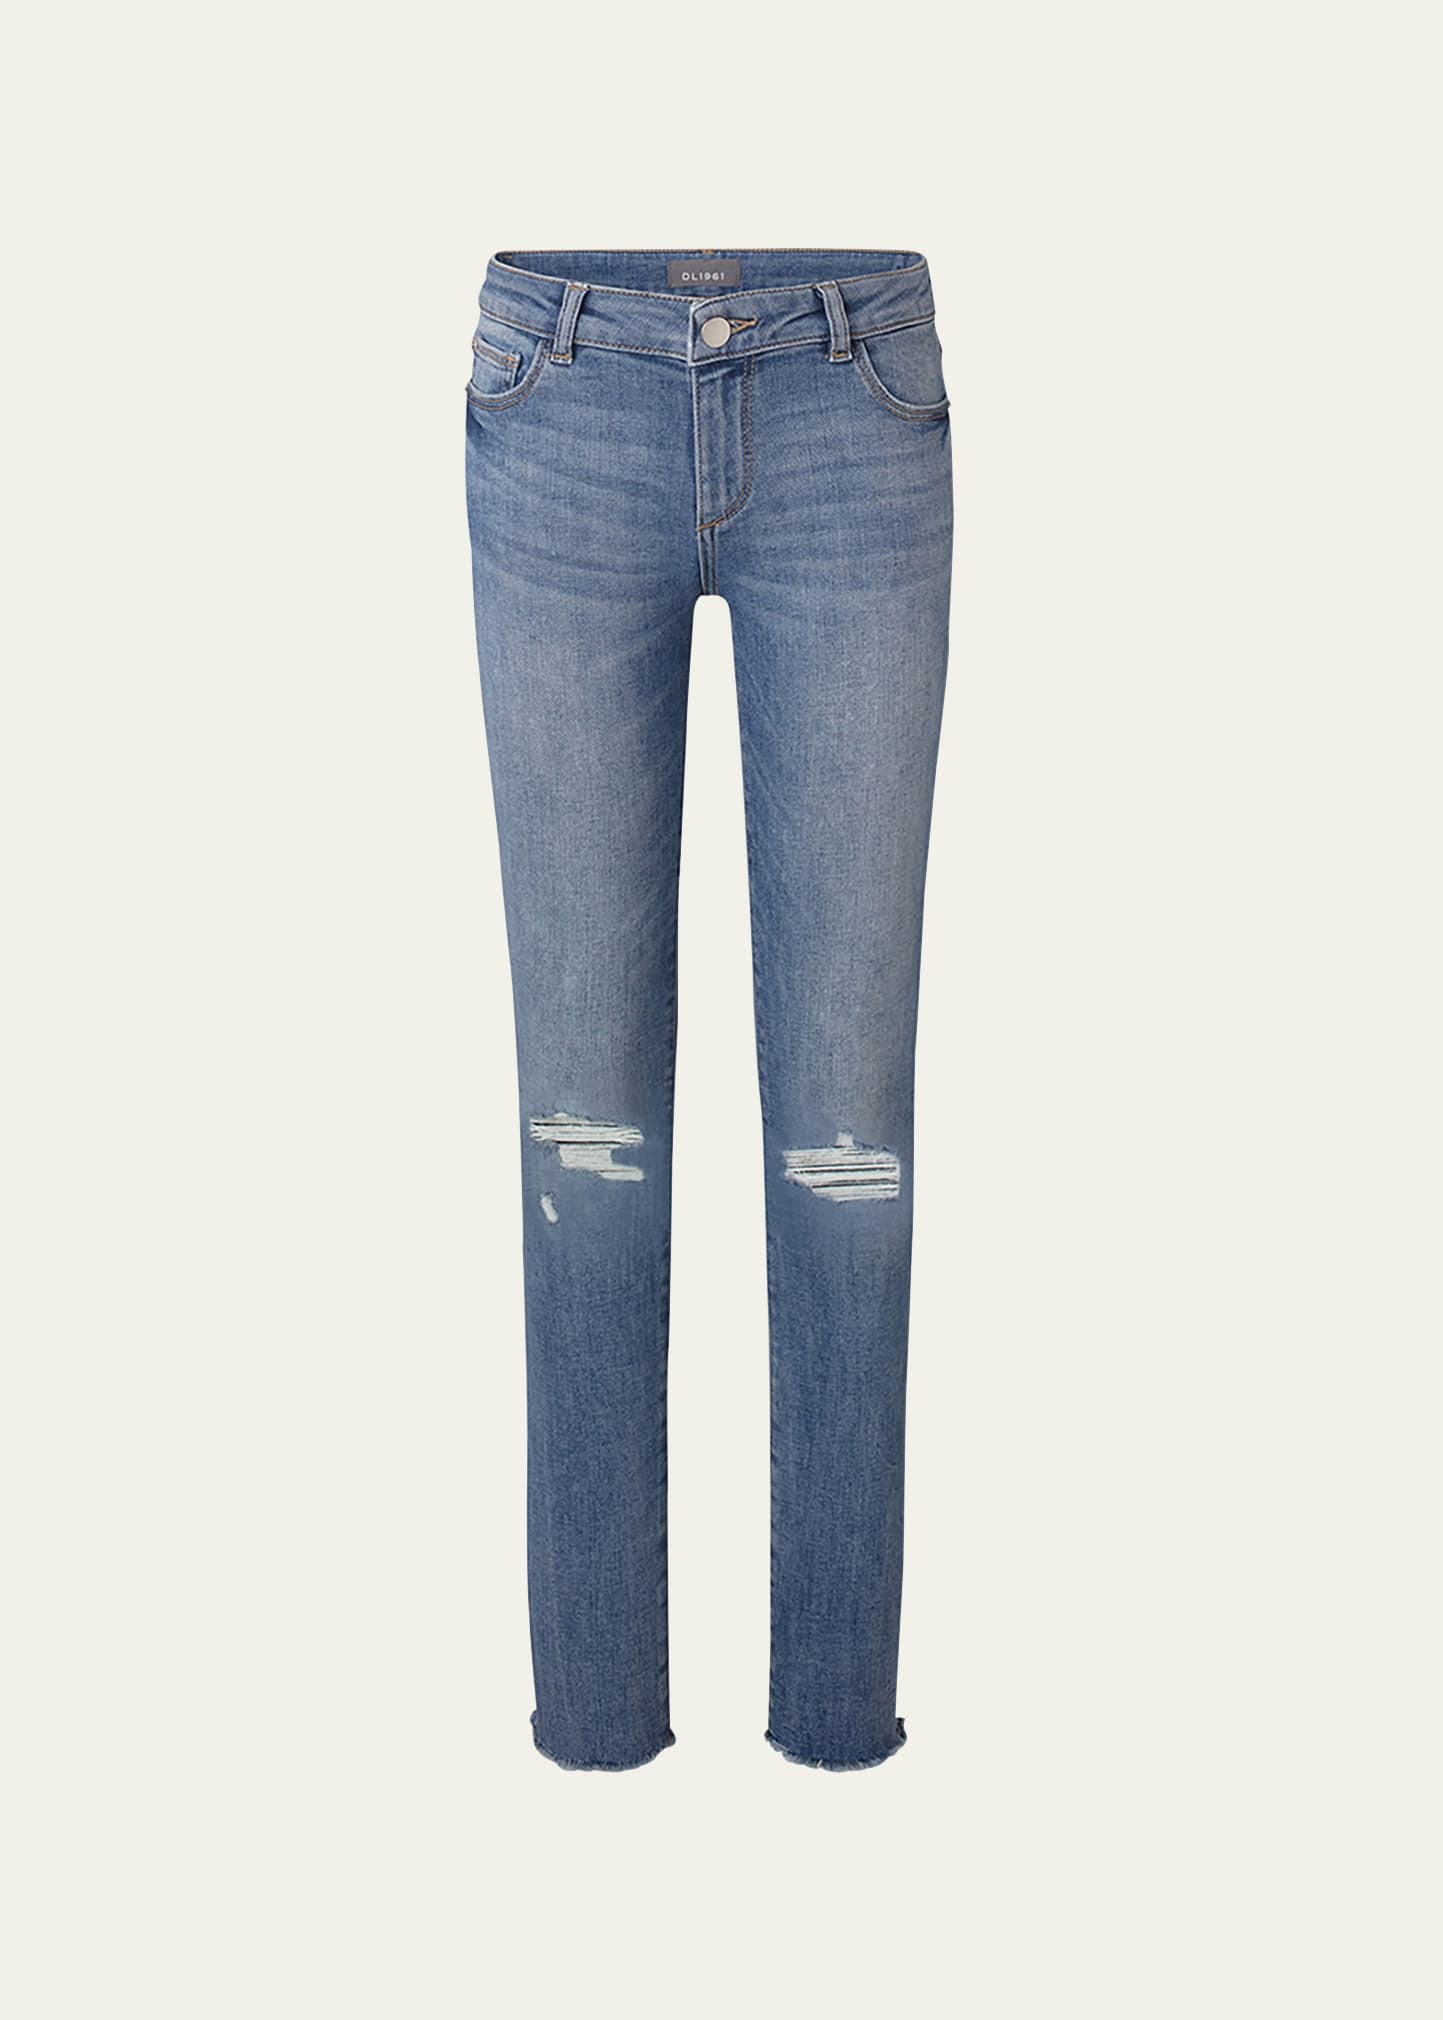 DL Premium Denim Girl's Chloe Skinny Distressed Denim Jeans, Size 7-16